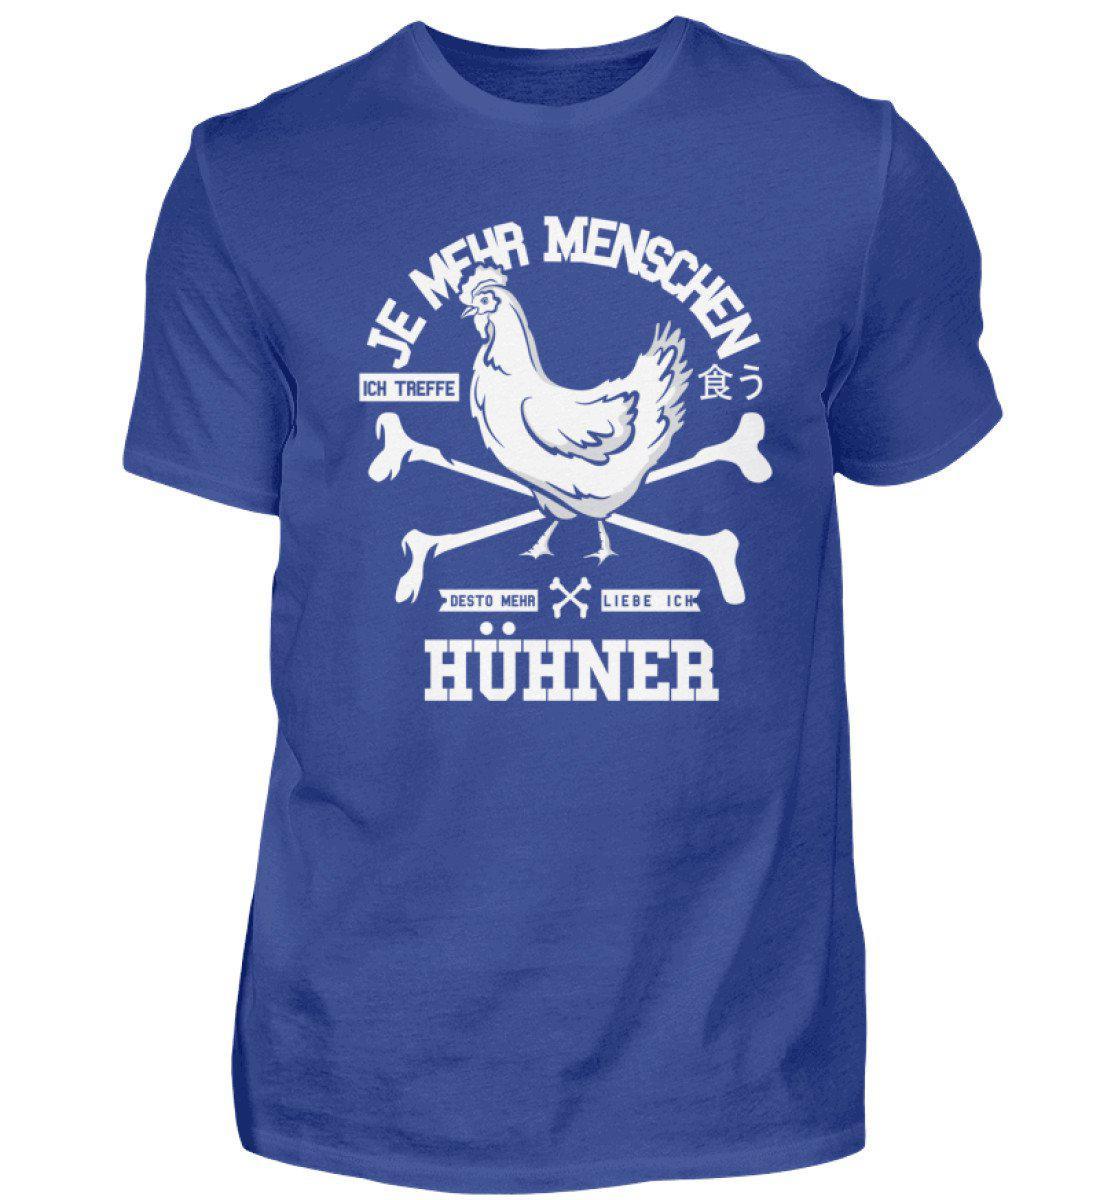 Desto mehr liebe ich Hühner · Herren T-Shirt-Herren Basic T-Shirt-Royal Blue-S-Agrarstarz